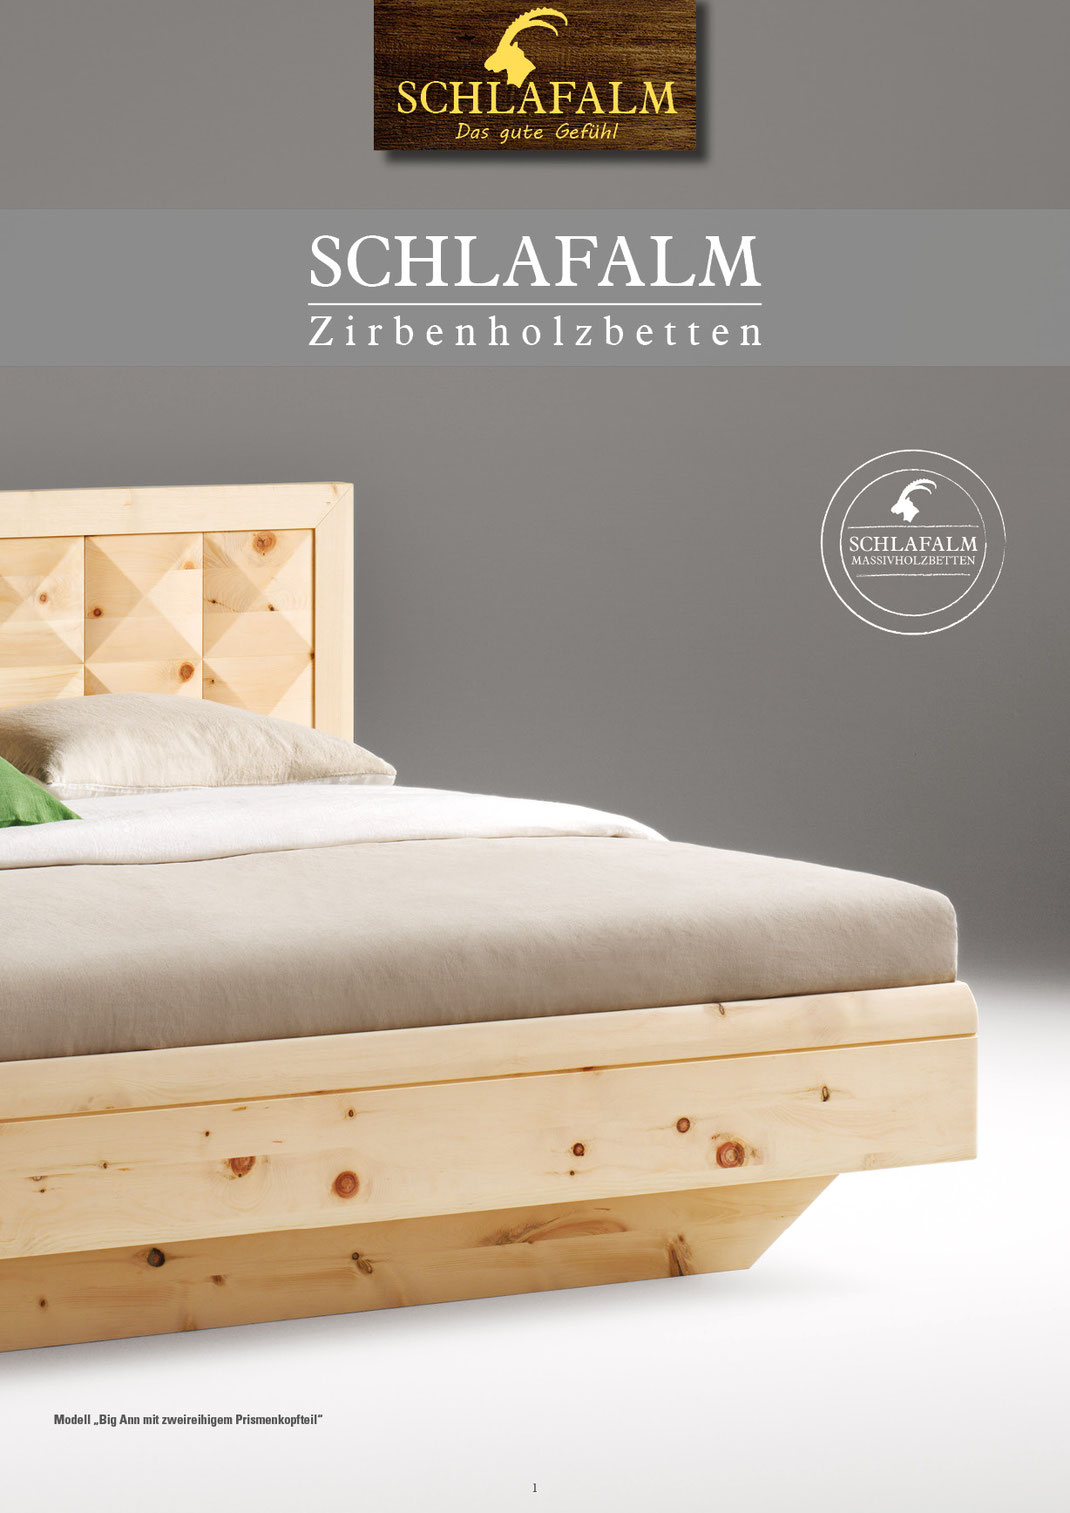 Ein Bild, das Text, Bett - Zirbenholzbett aus Österreisch, Zirbenbetten, Zirbenöl, Schlafzimmer enthält.